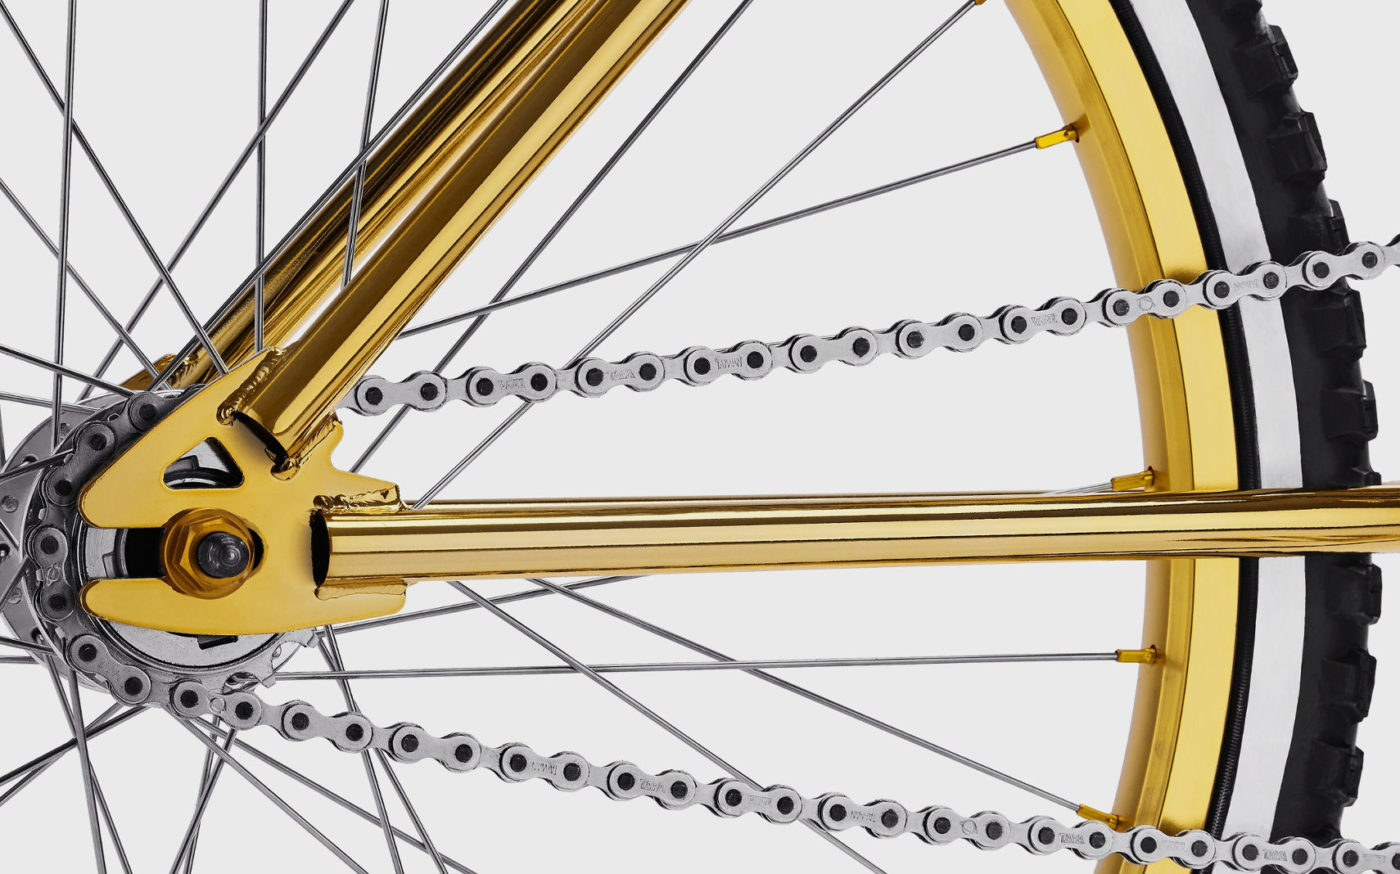 Bogarde X Dior Homme Gold BMX Bike